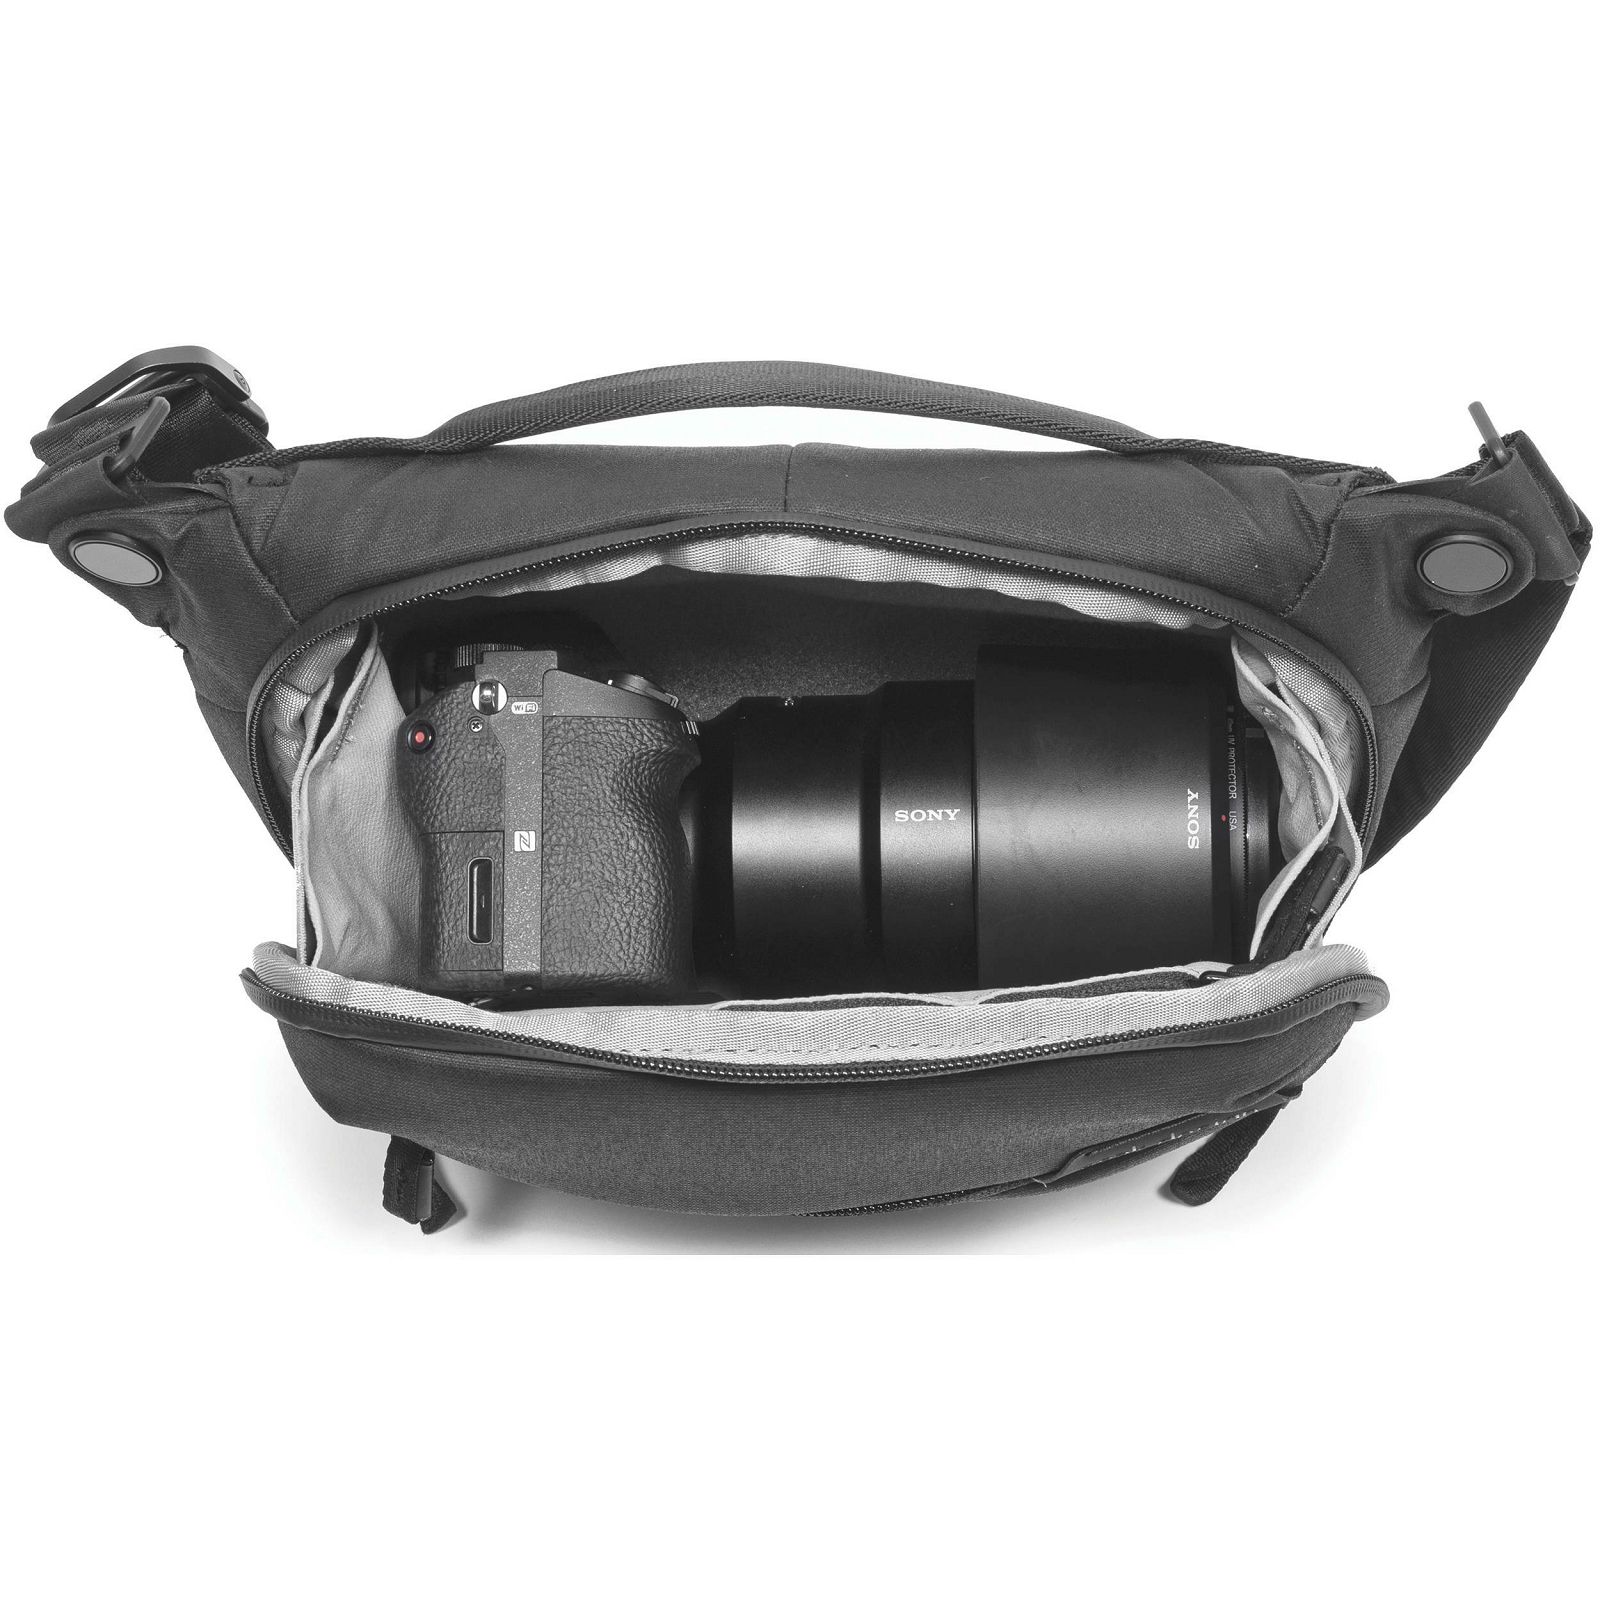 Peak Design Everyday Sling 3L v2 Black crna torba za DSLR fotoaparat (BEDS-3-BK-2)